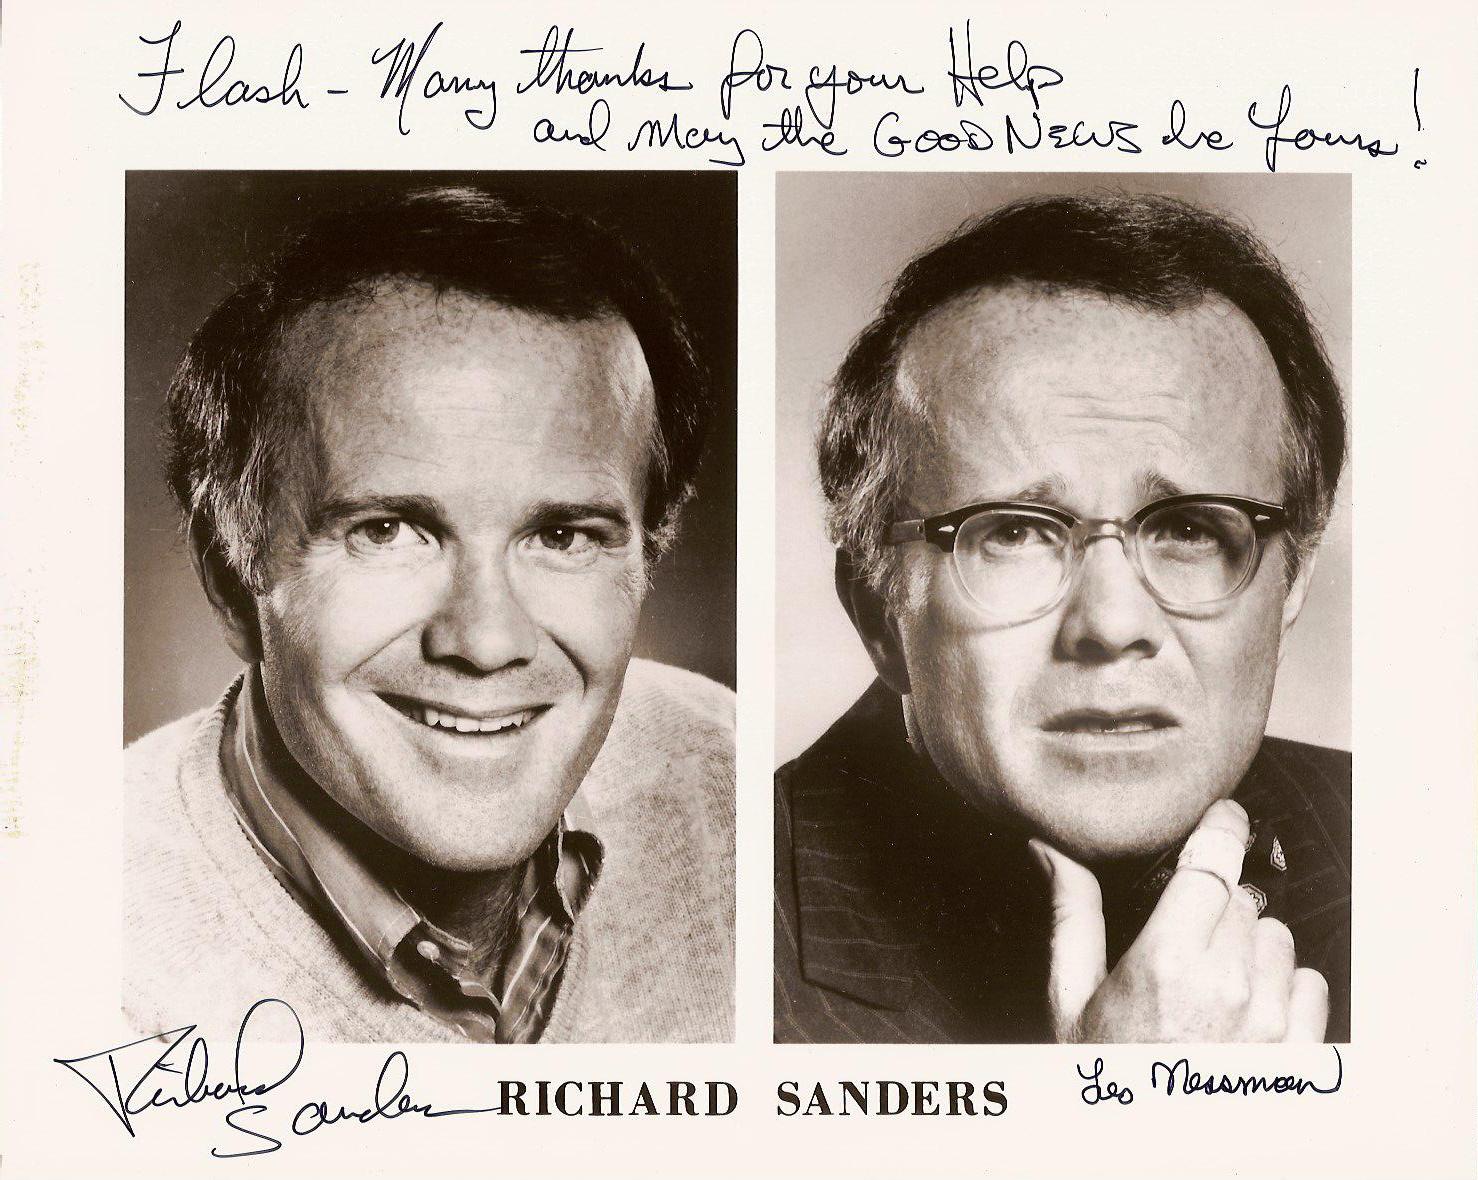 Richard Sanders (actor) Pictures of Richard Sanders actor Pictures Of Celebrities